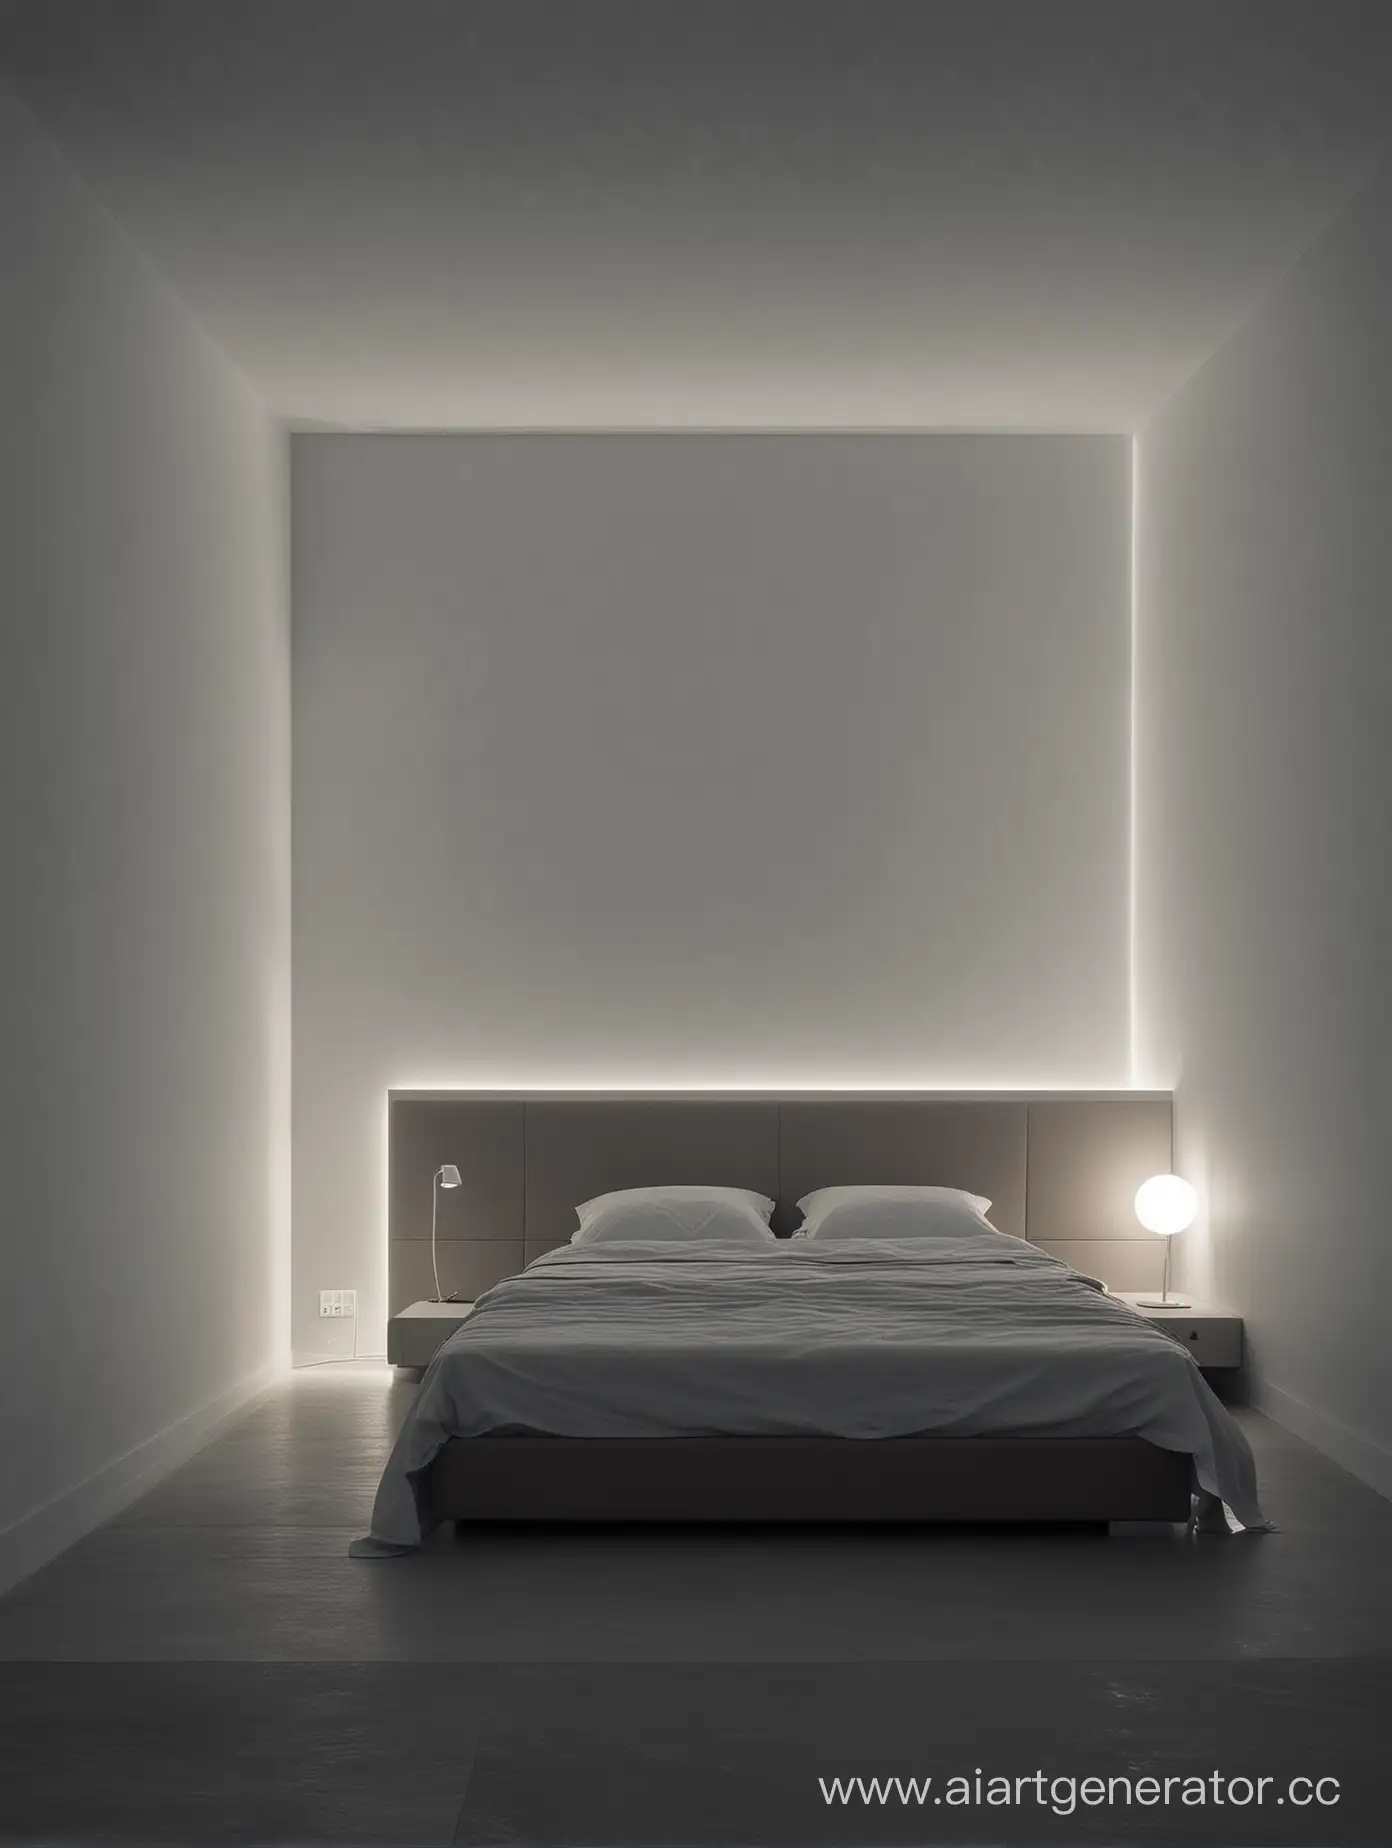 Minimalist-Nighttime-Room-Interior